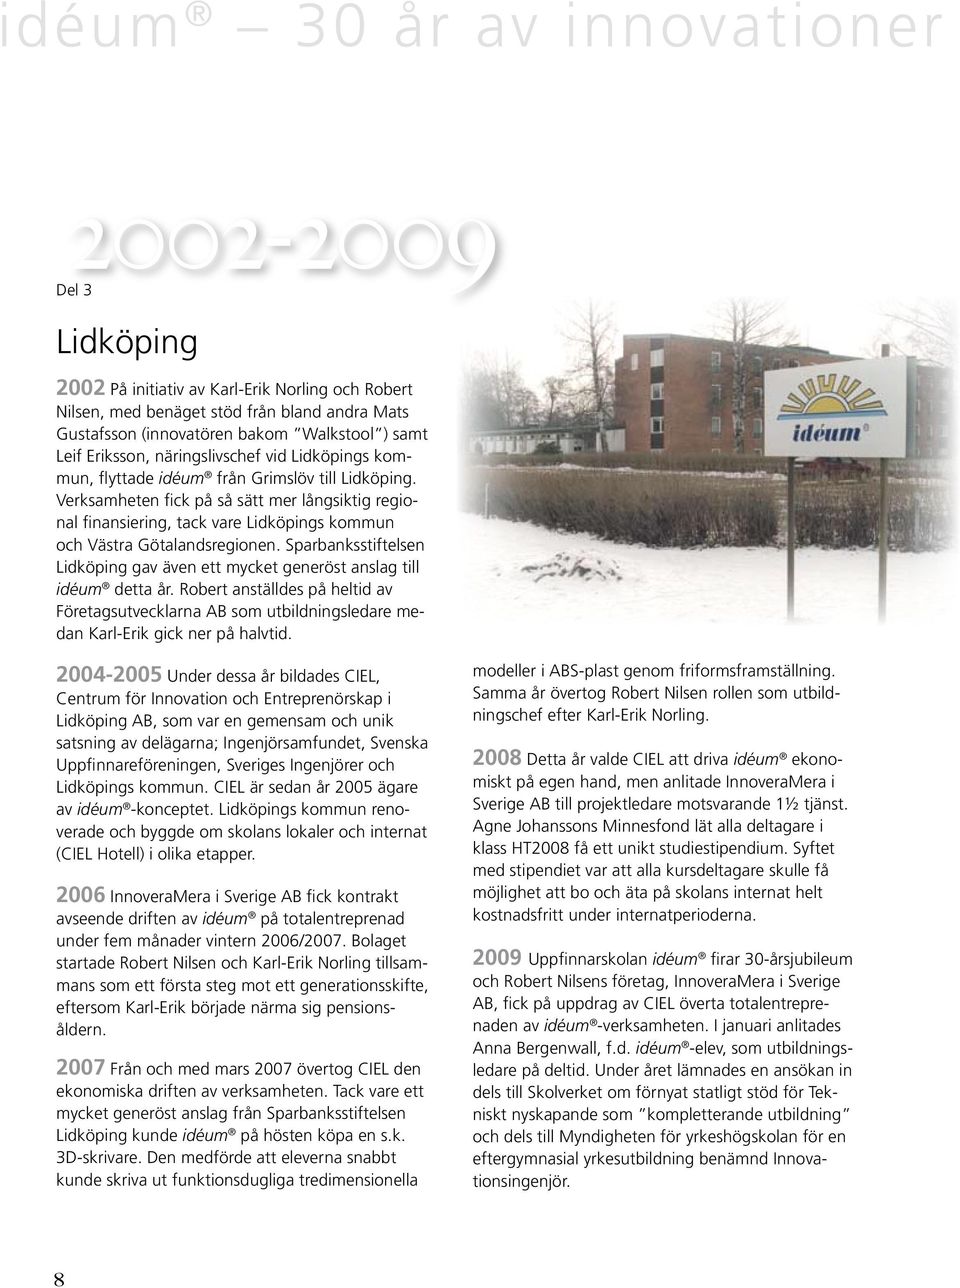 Verksamheten fick på så sätt mer långsiktig regional finansiering, tack vare Lidköpings kommun och Västra Götalandsregionen.